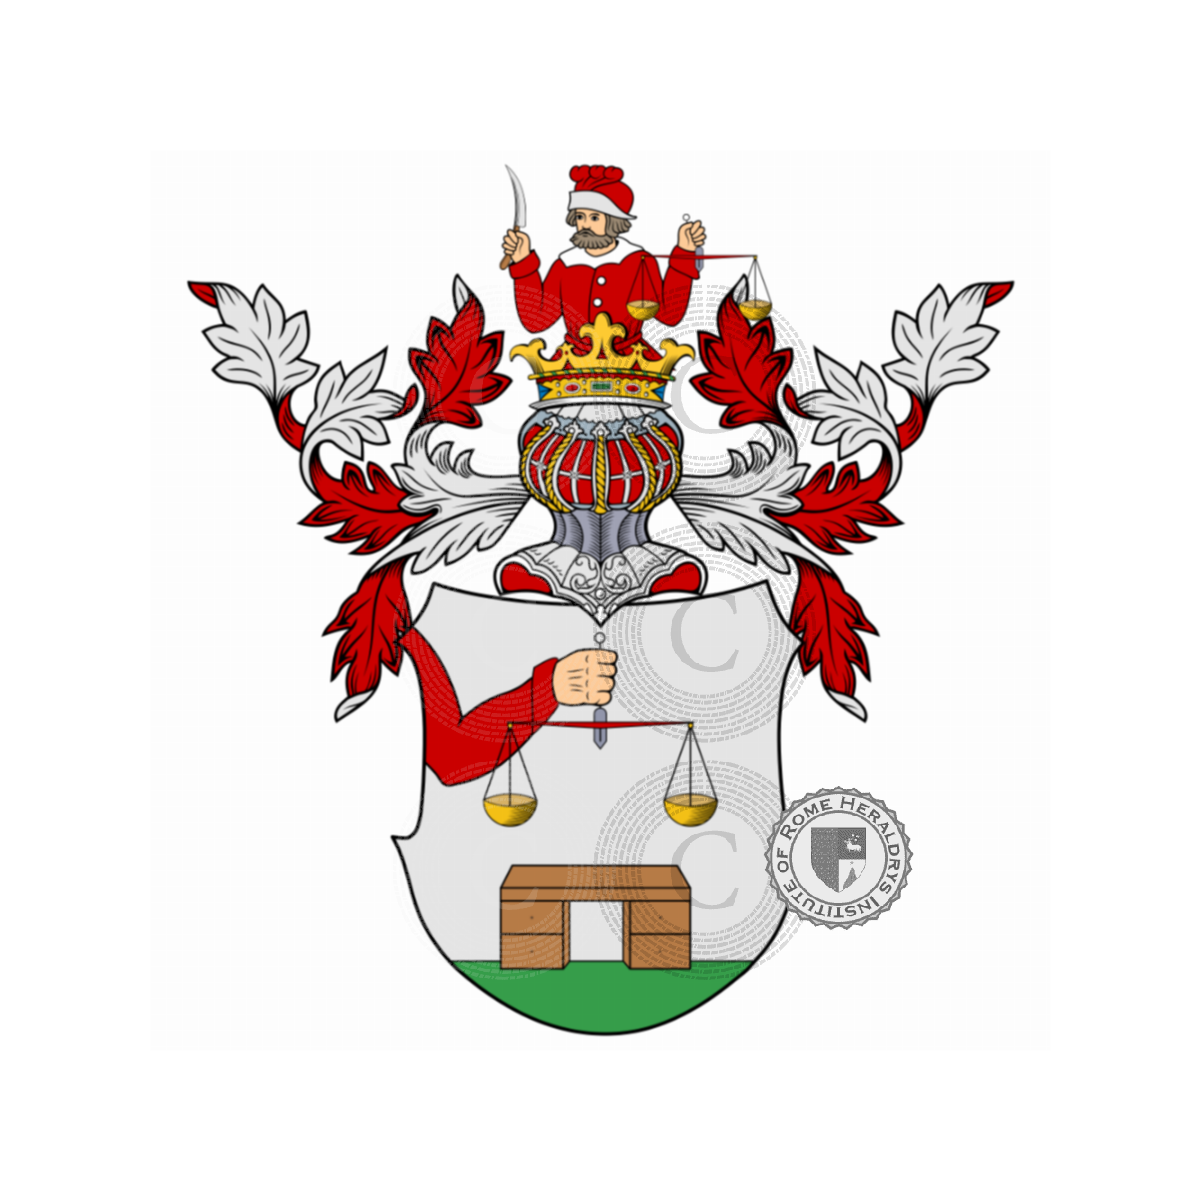 Escudo de la familiaSteckemesser, Steckemess,Steckemesser